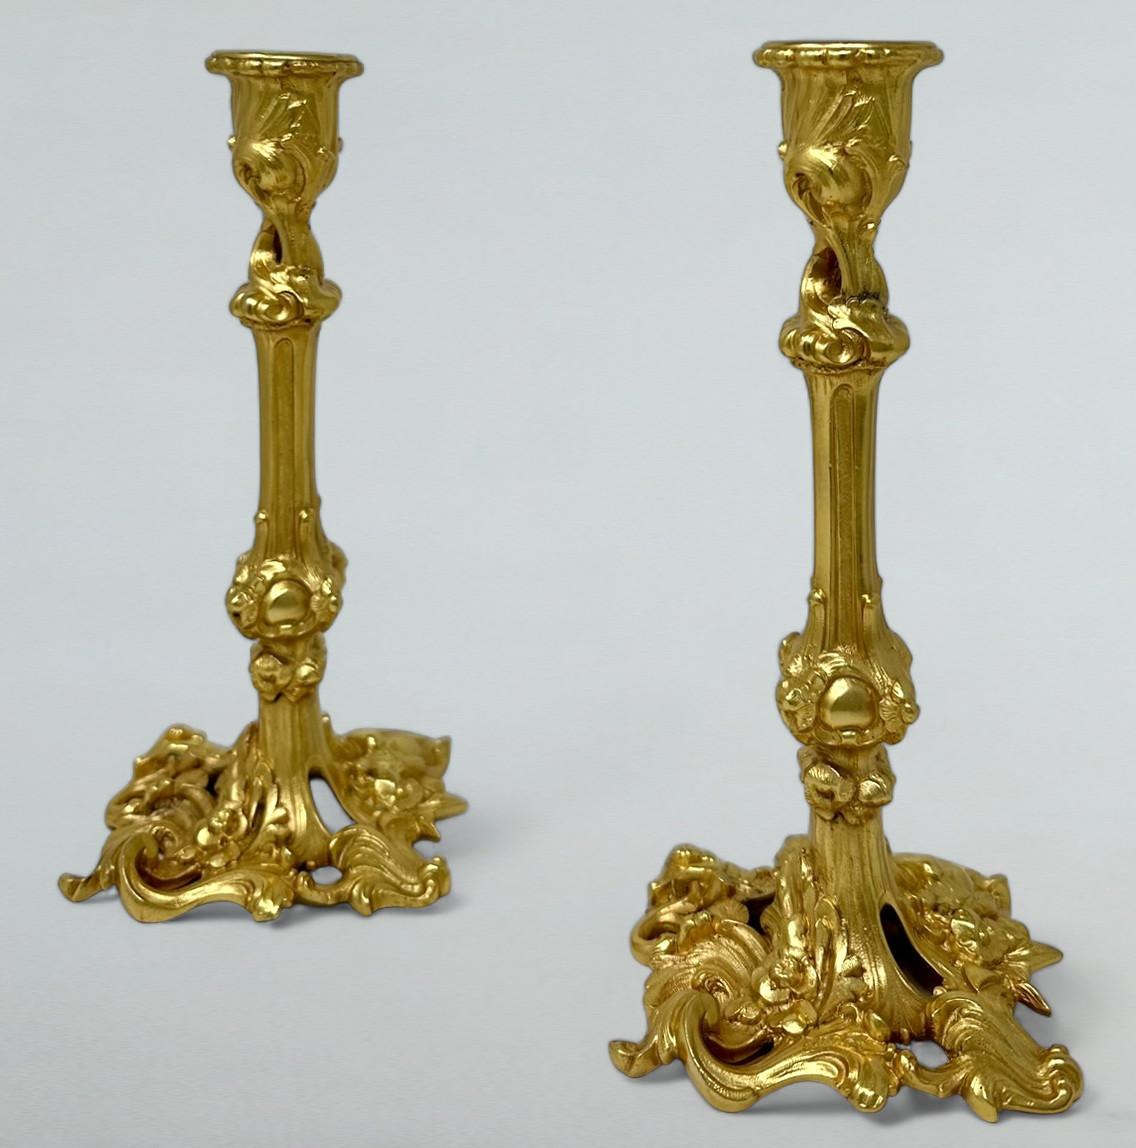 Élégante paire de chandeliers de table en bronze doré, de qualité exceptionnelle et de proportions généreuses, datant du début de l'époque édouardienne.  

Chacune d'entre elles a une base étalée en forme avec des détails de coquilles et d'angles